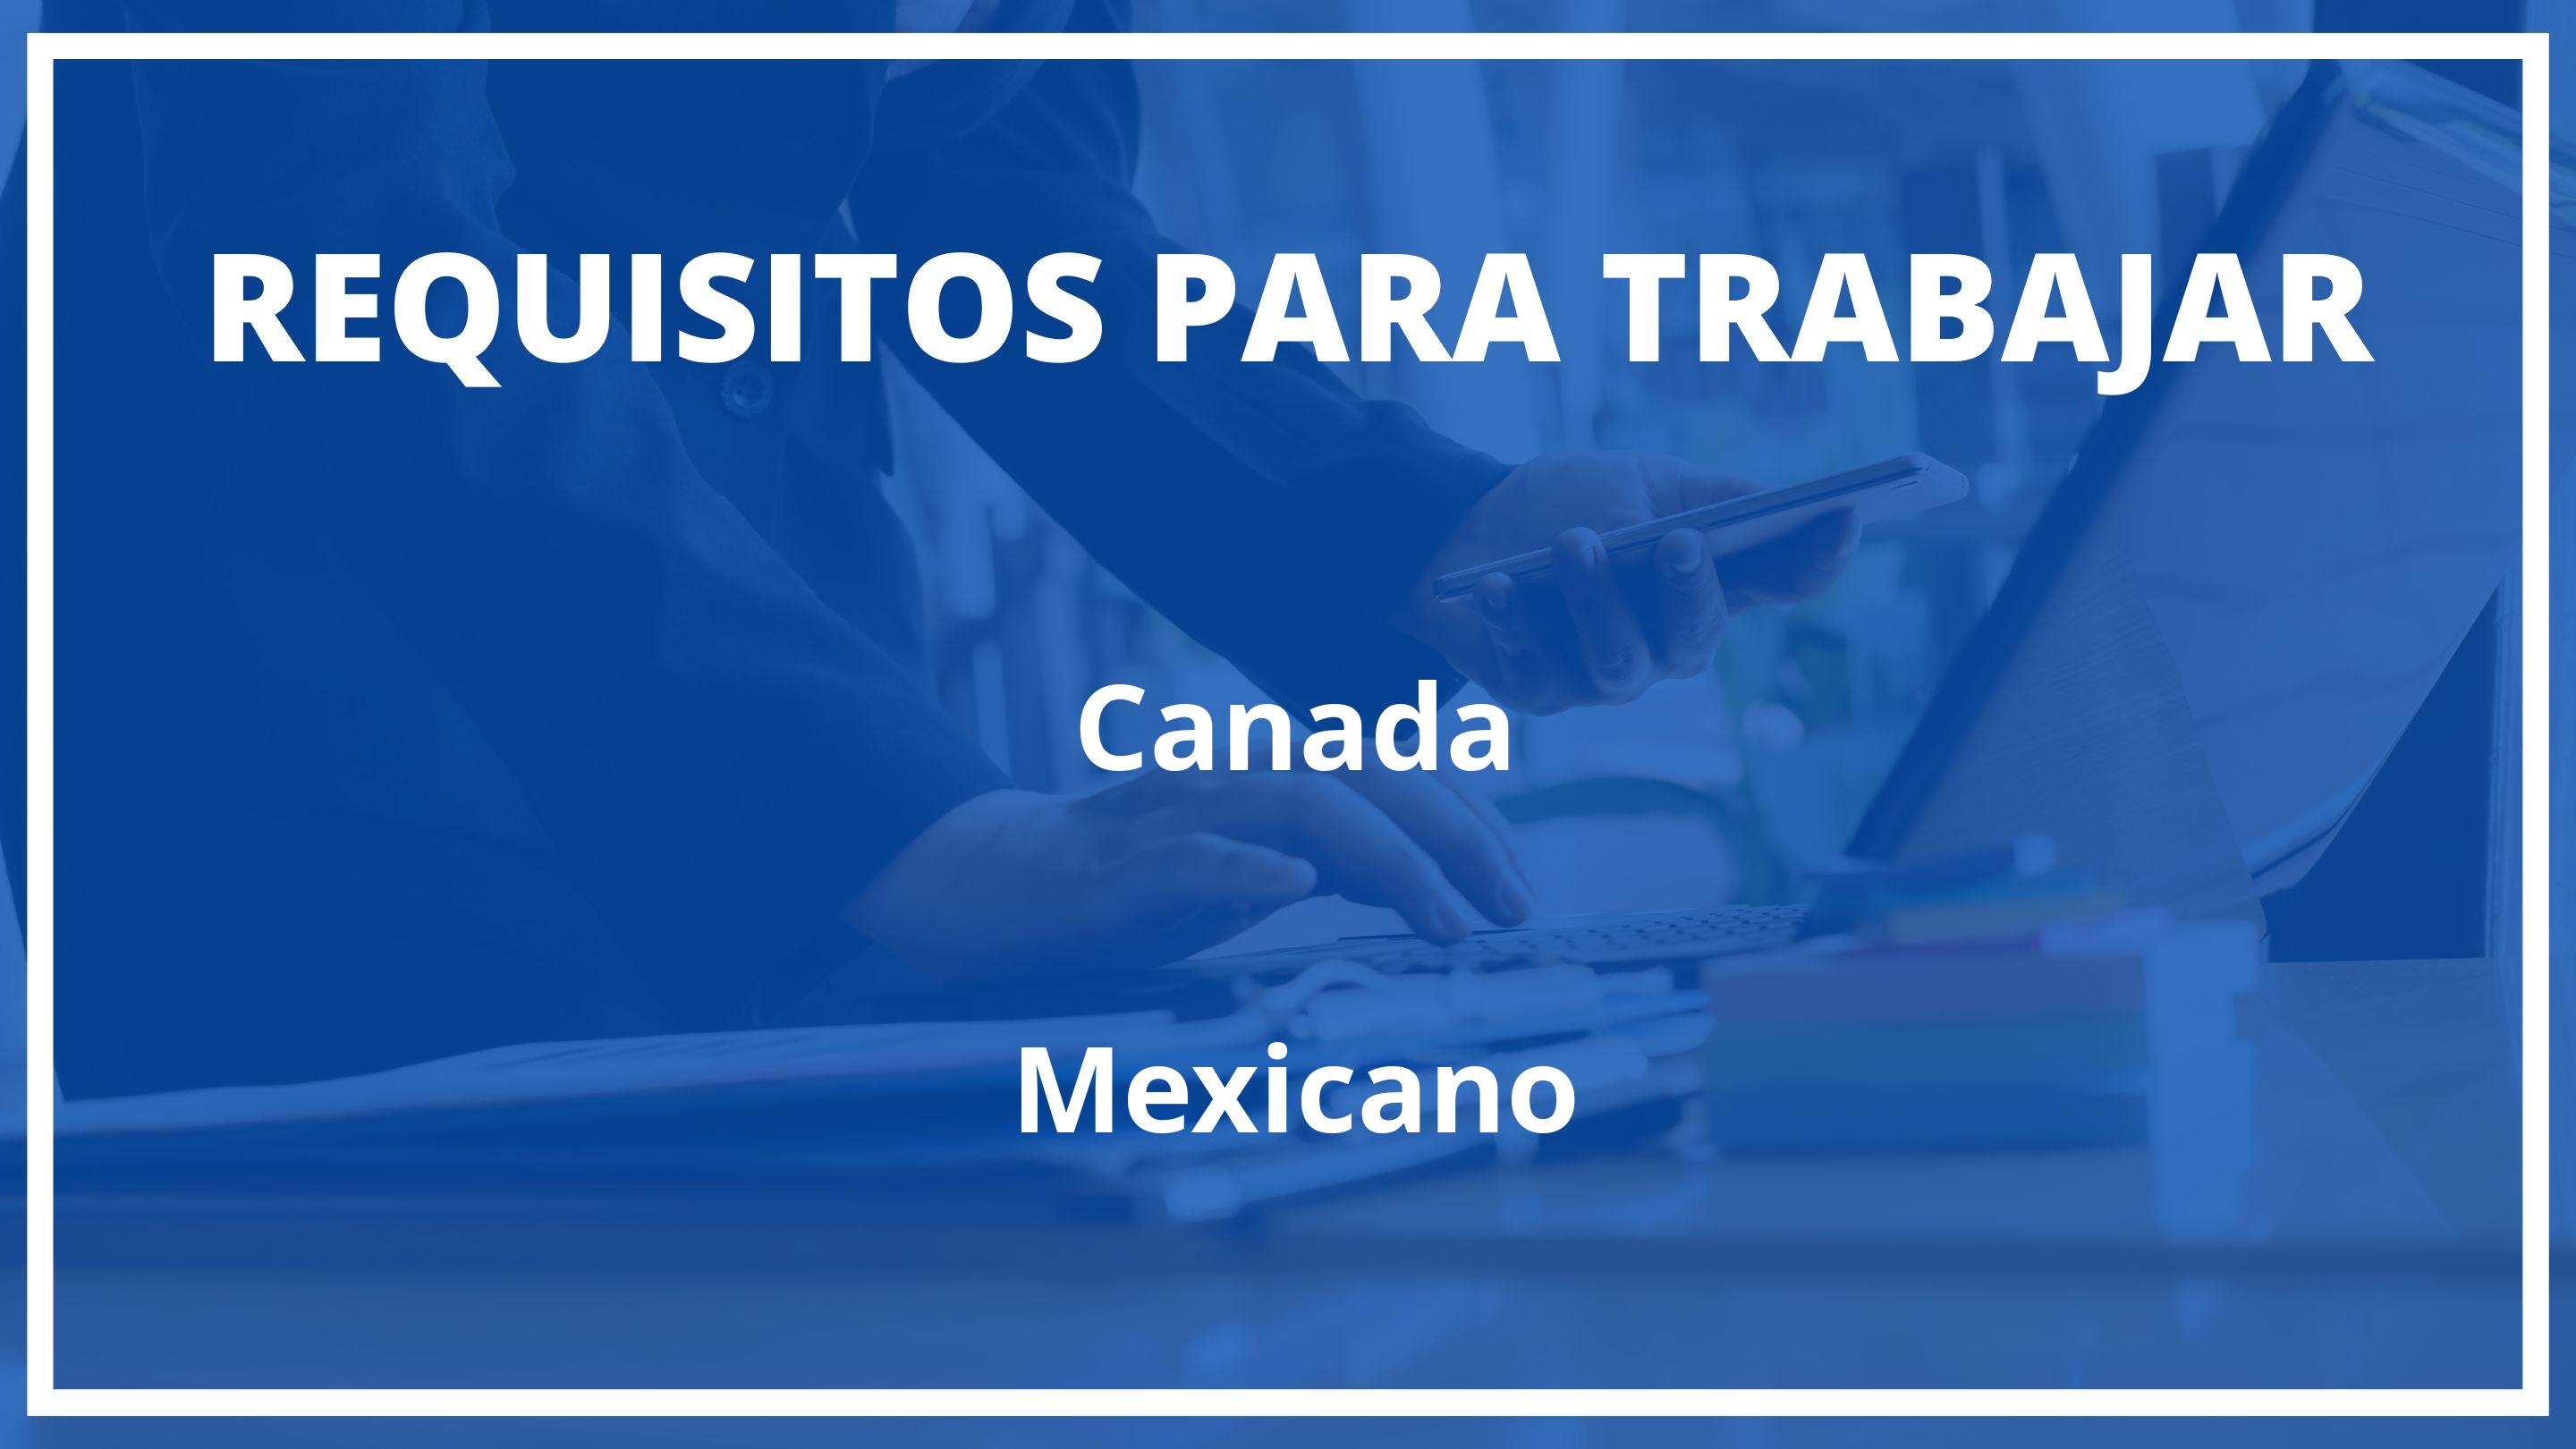 Requisitos Para Trabajar En Canada Siendo Mexicano